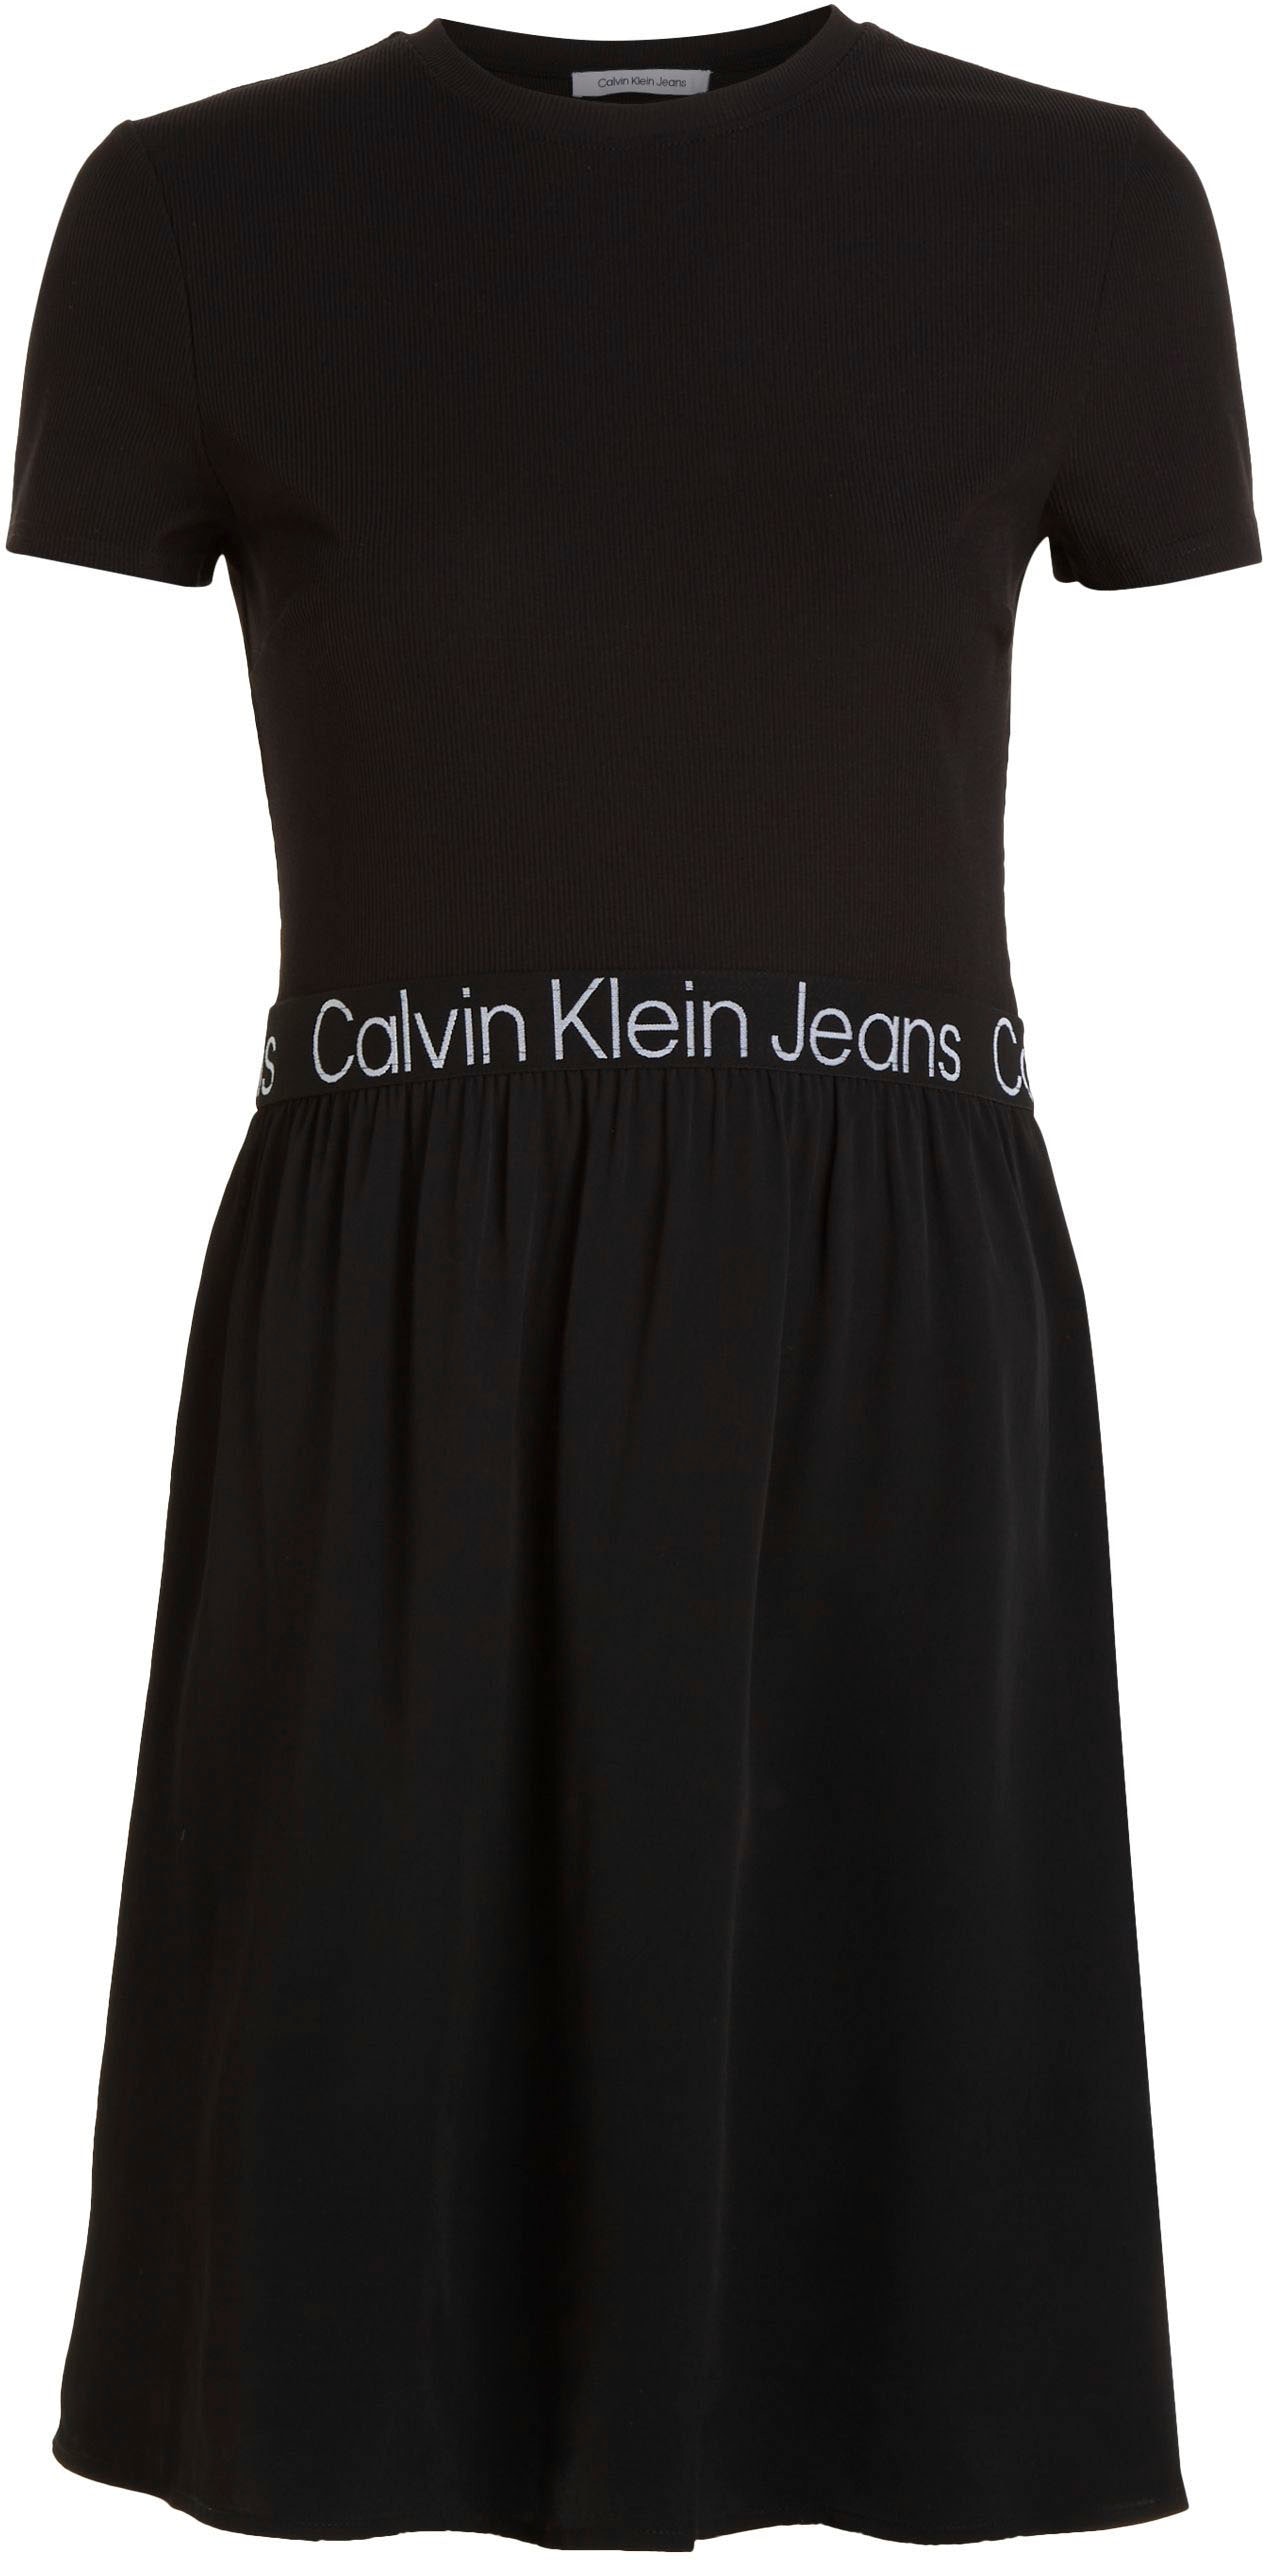 ♕ Calvin Klein versandkostenfrei Jeans im 2-in-1-Kleid, auf Materialmix